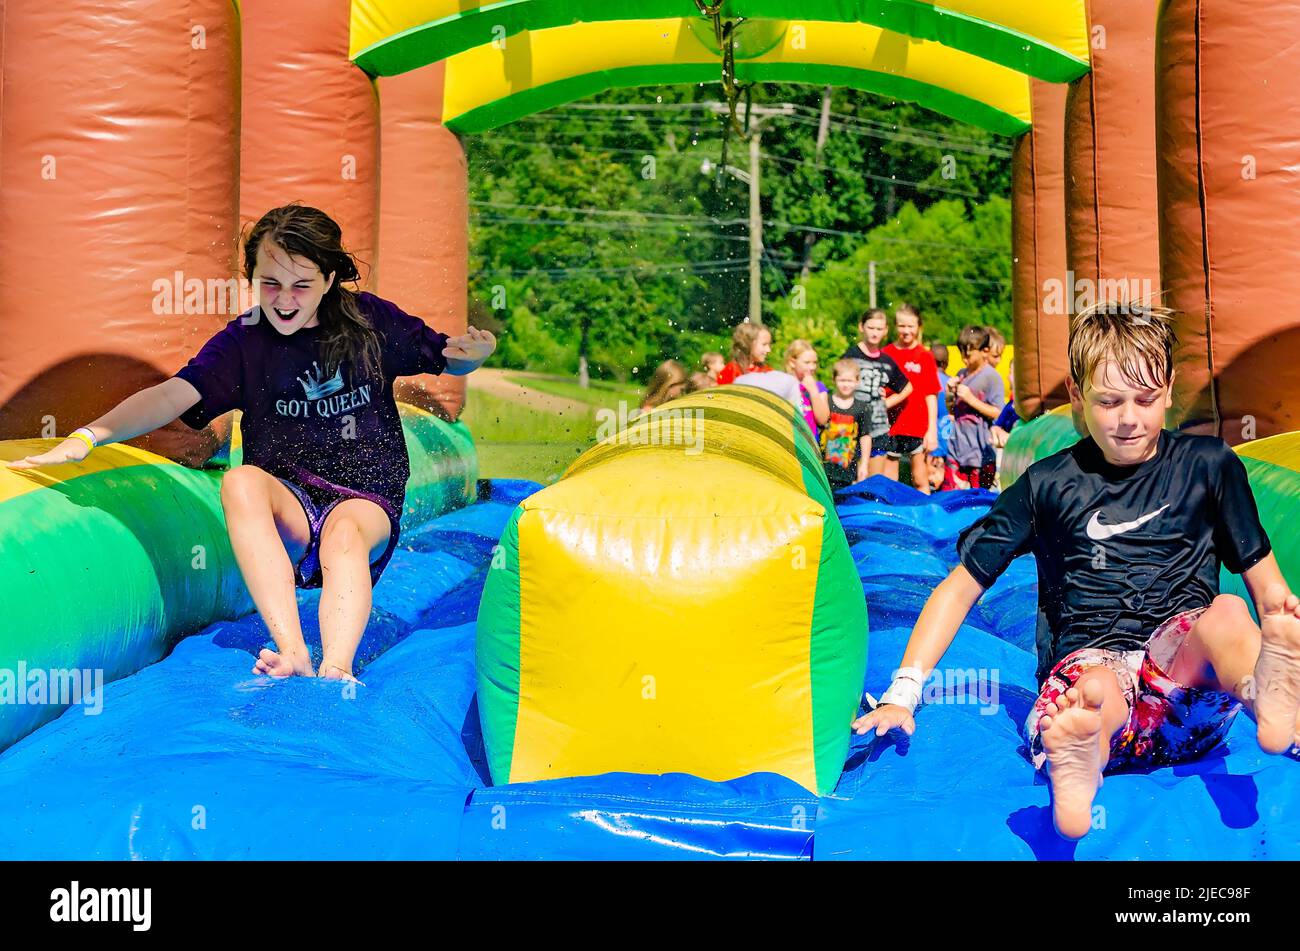 Kinder spielen am 27. Juli 2012 auf einer aufblasbaren Wasserrutsche in Columbus, Mississippi. Stockfoto